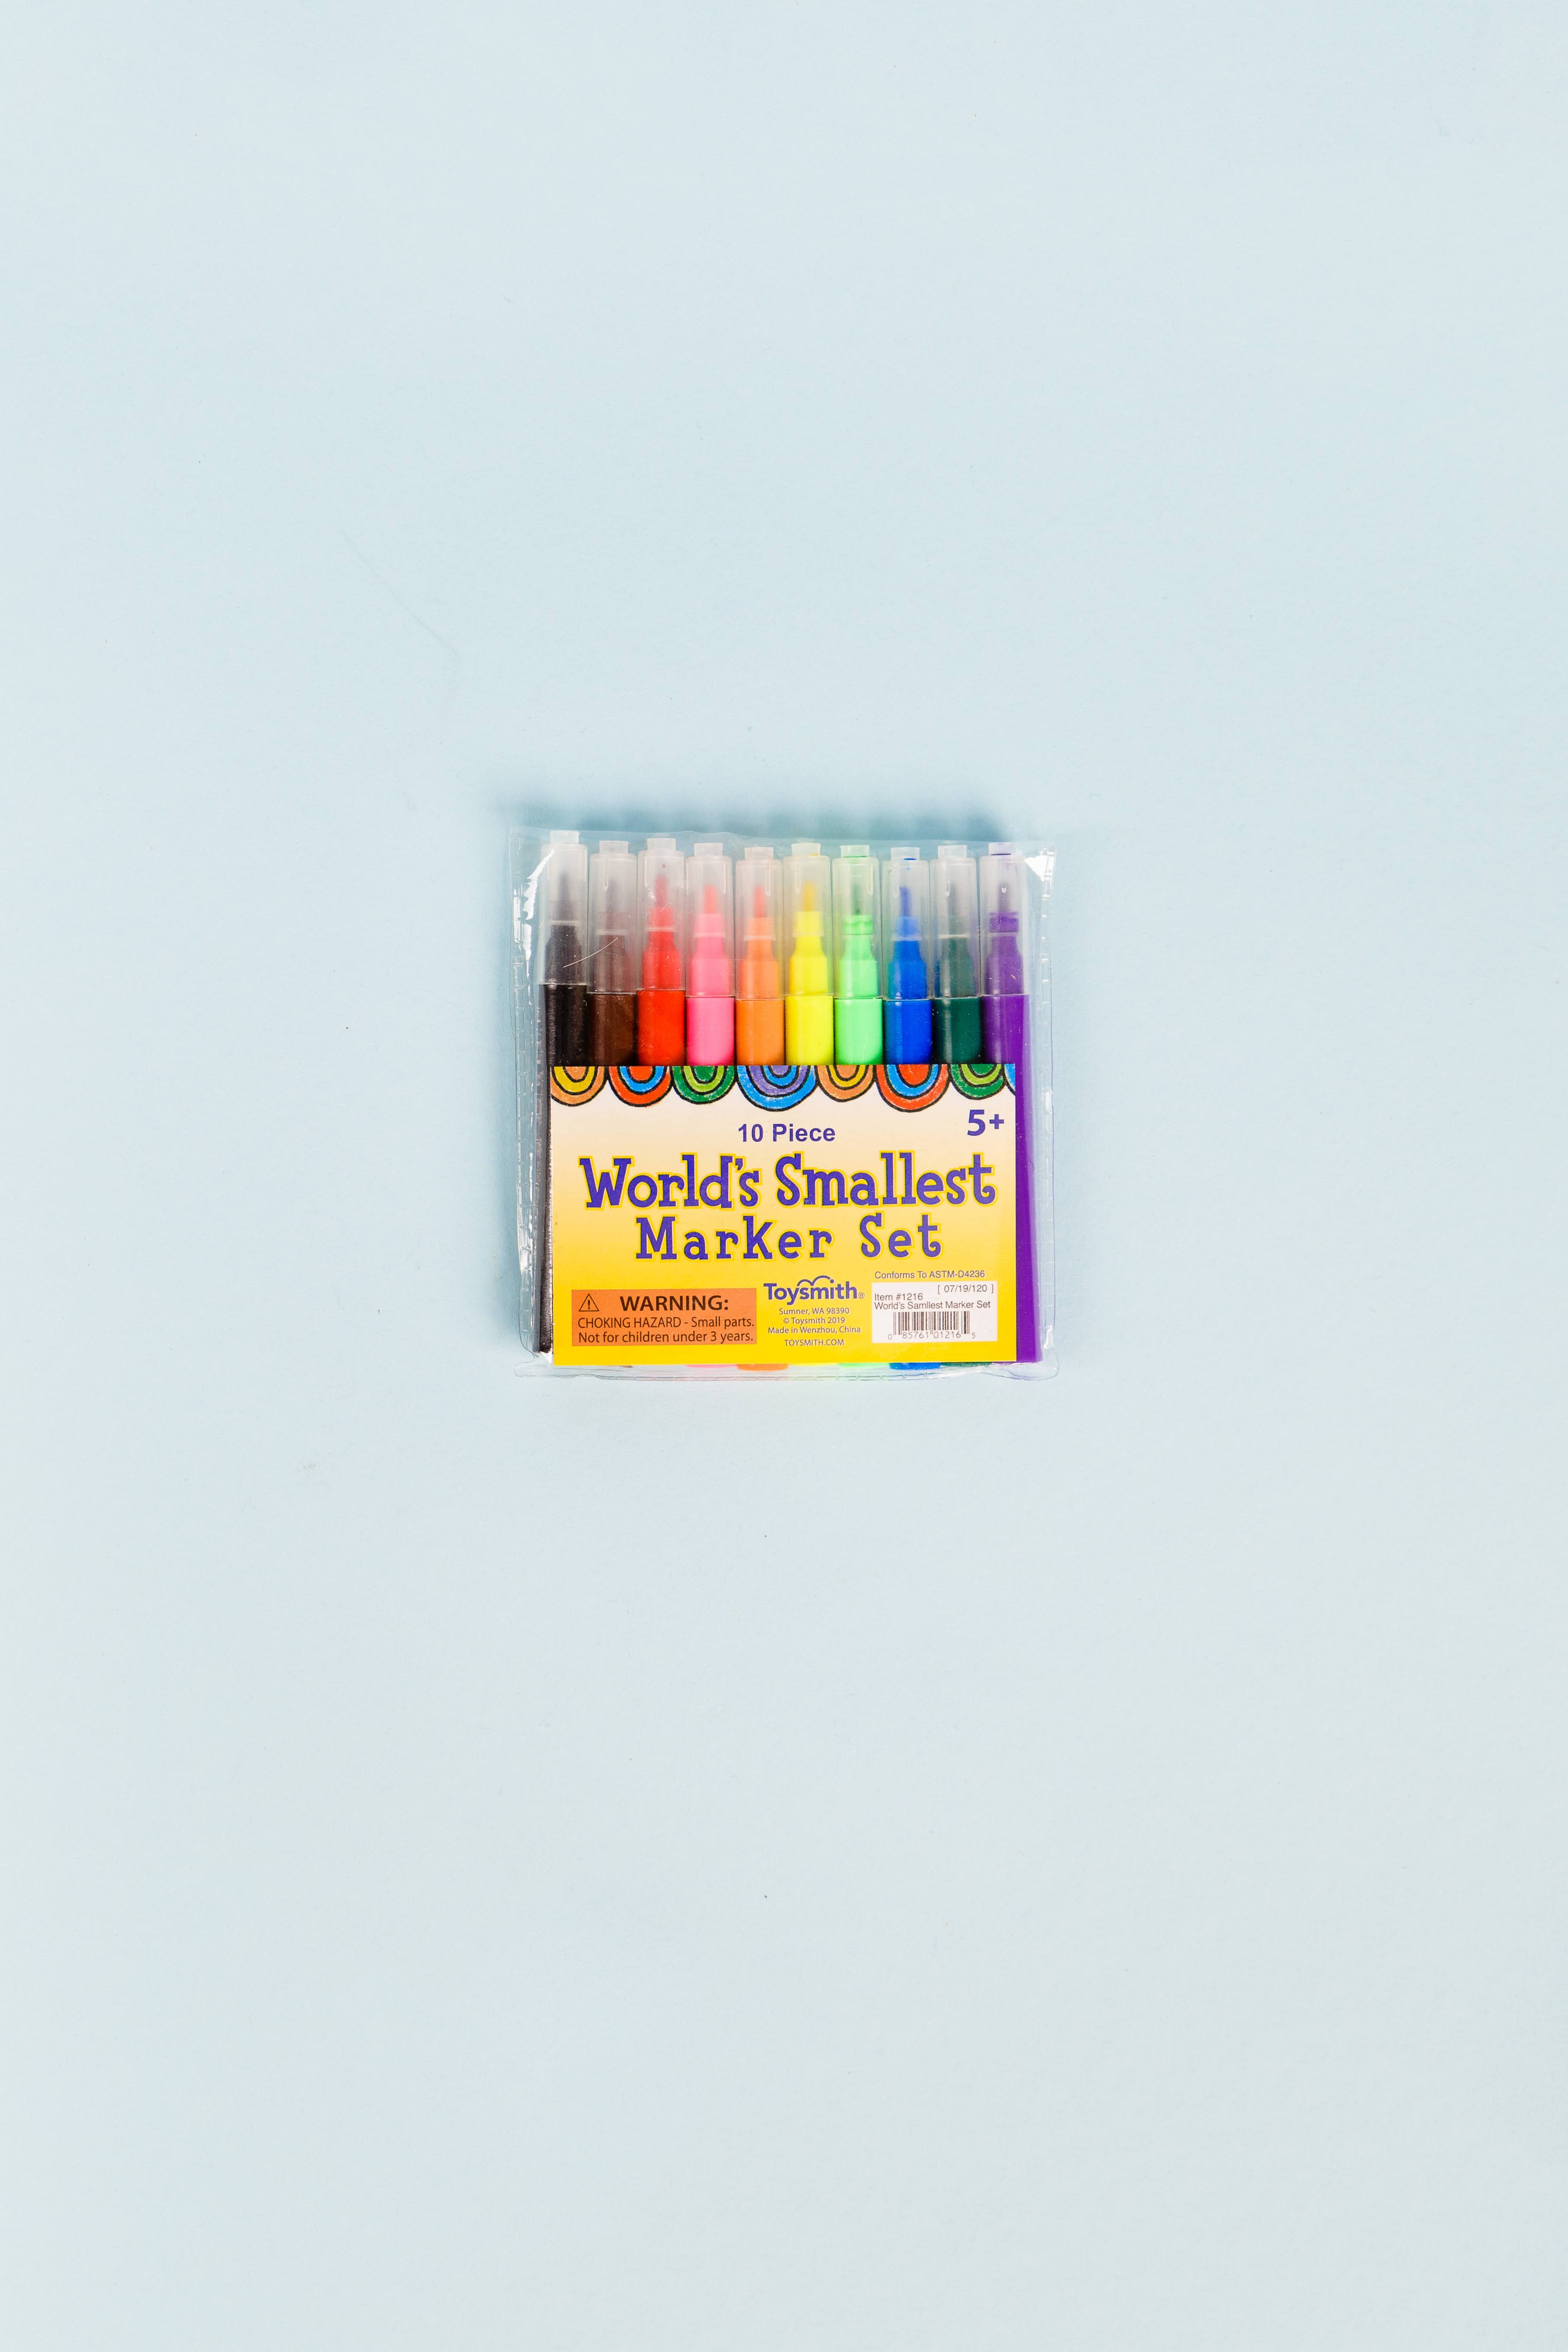 Marketing 6 Piece Crayon Sets